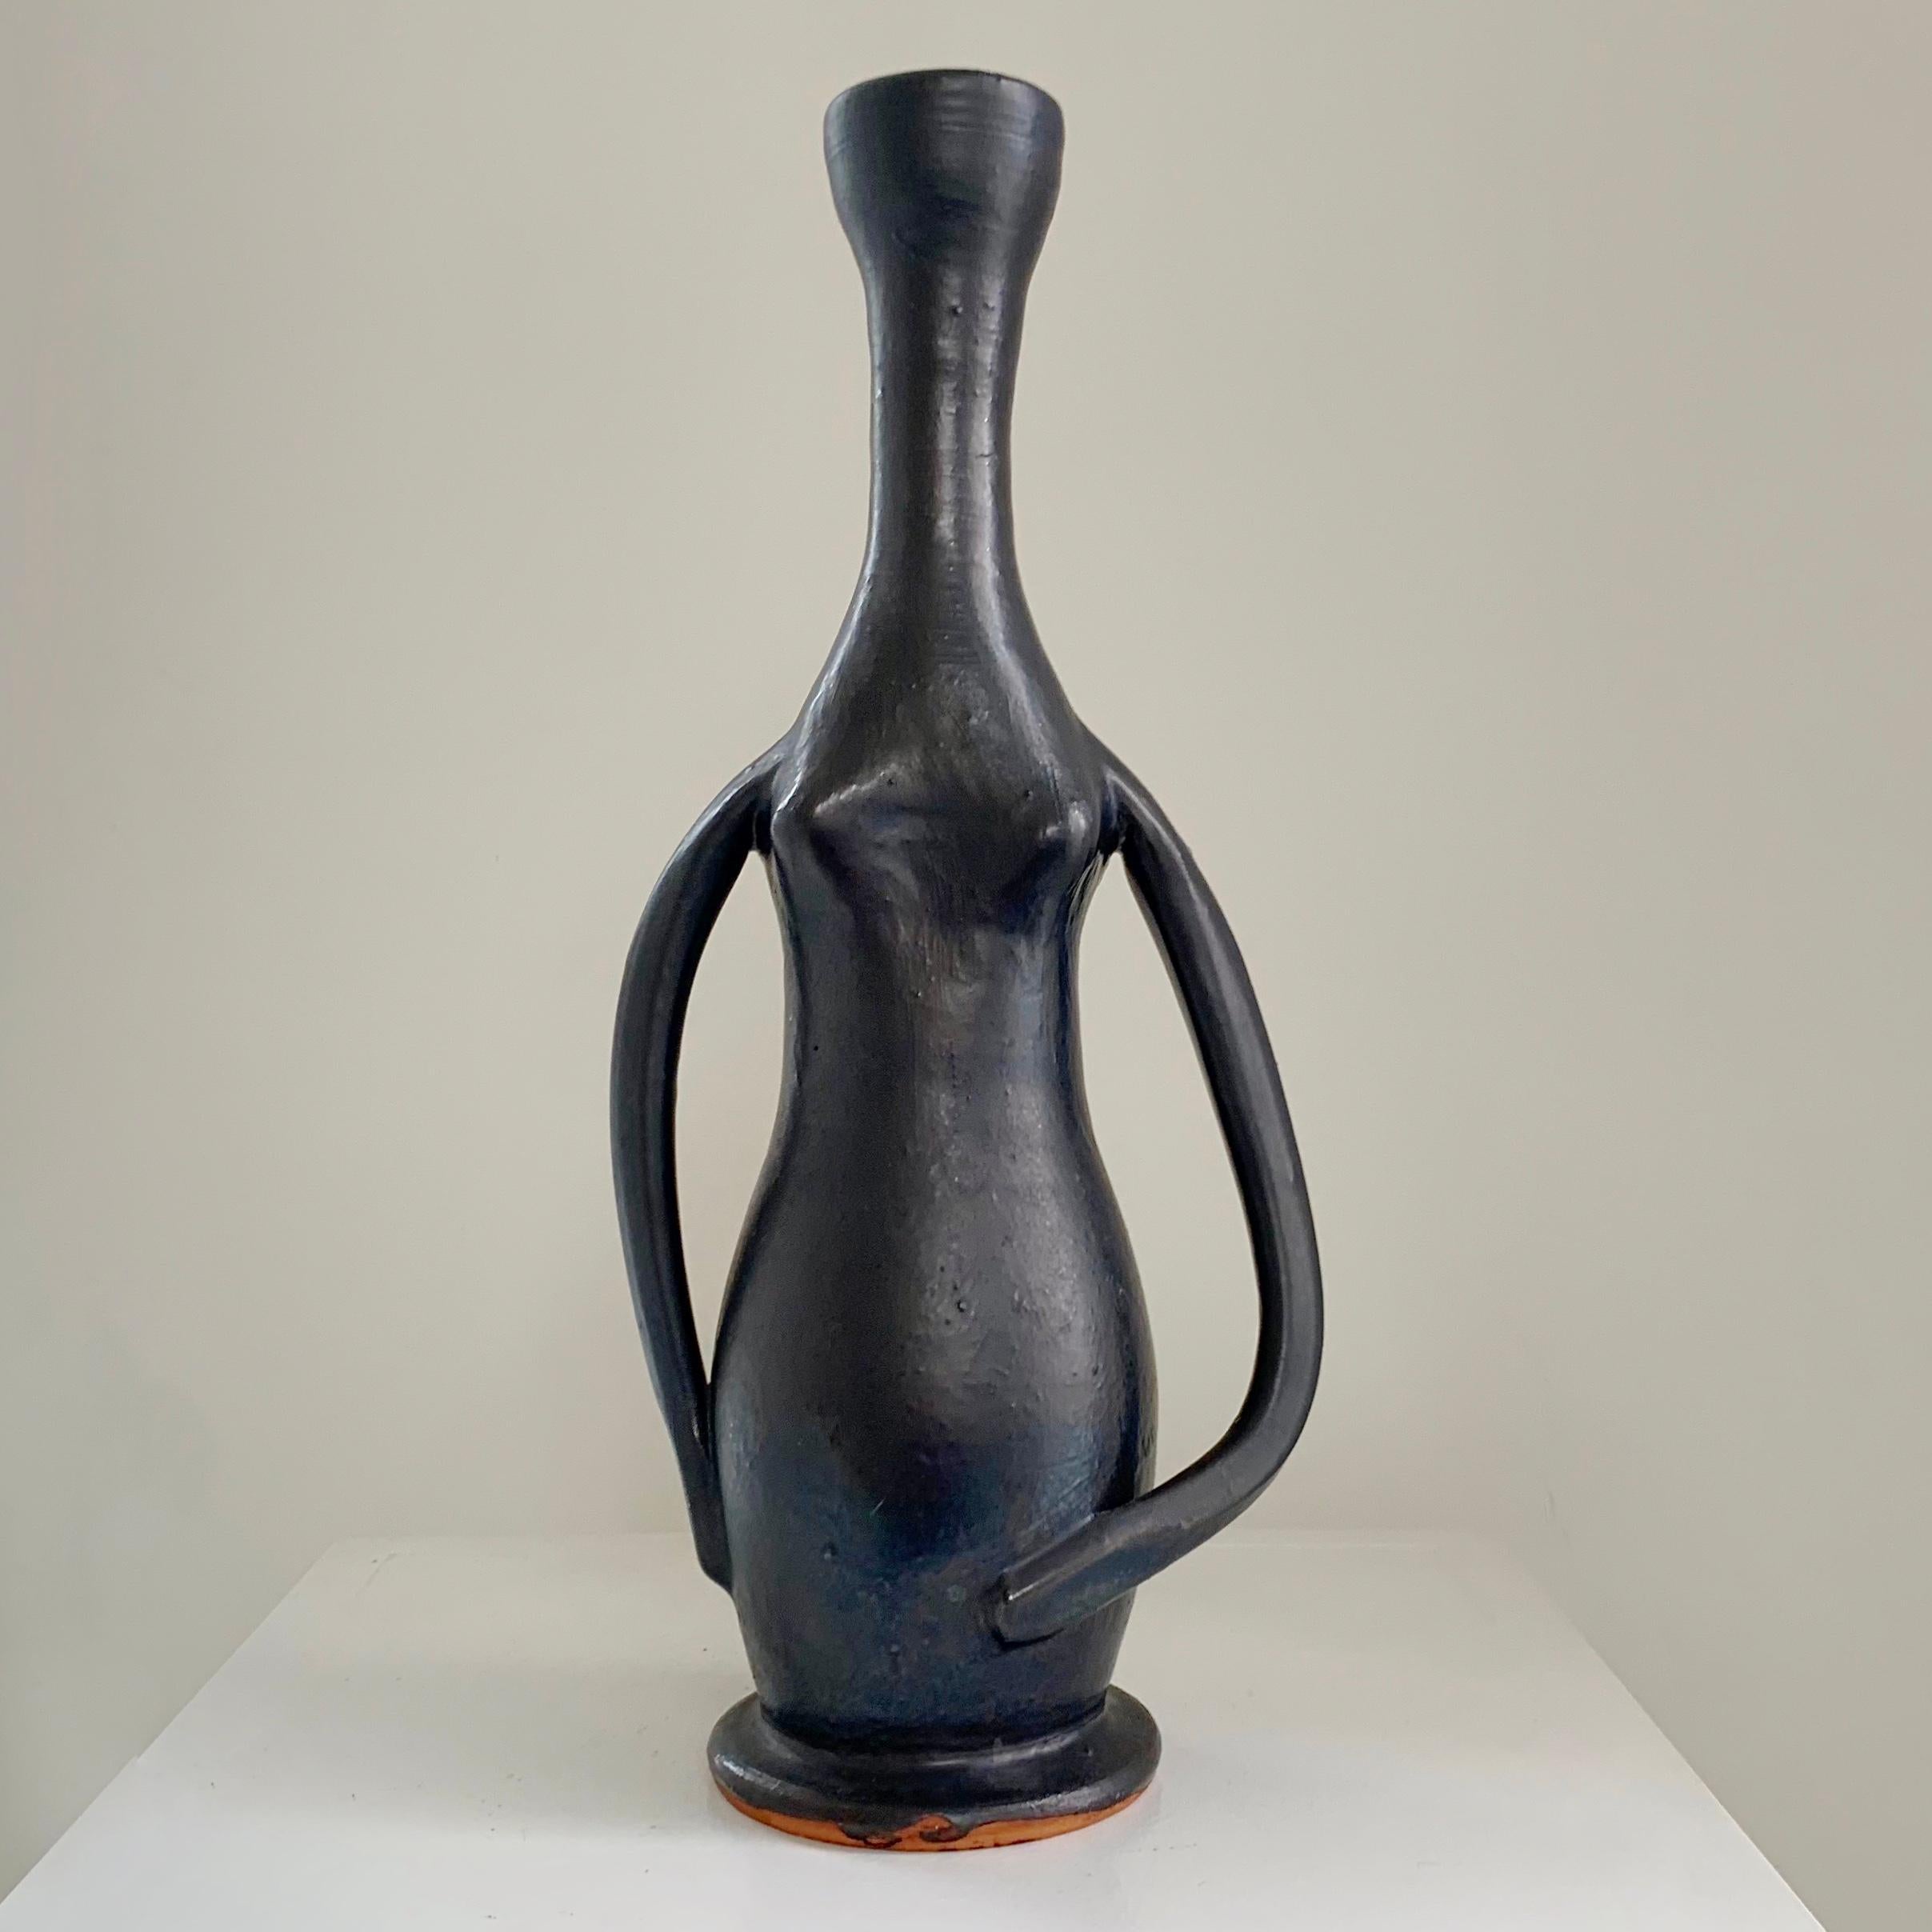 Beau vase antropomorphe de Guillaume Met De Penninghen, vers 1950, France.
Grès émaillé noir.
Dimensions : 32 cm de haut, 14 cm de large, 8 cm de profondeur : 32 cm H, 14 cm L, 8 cm P.
Rare céramique en bon état d'origine.
Tous les achats sont